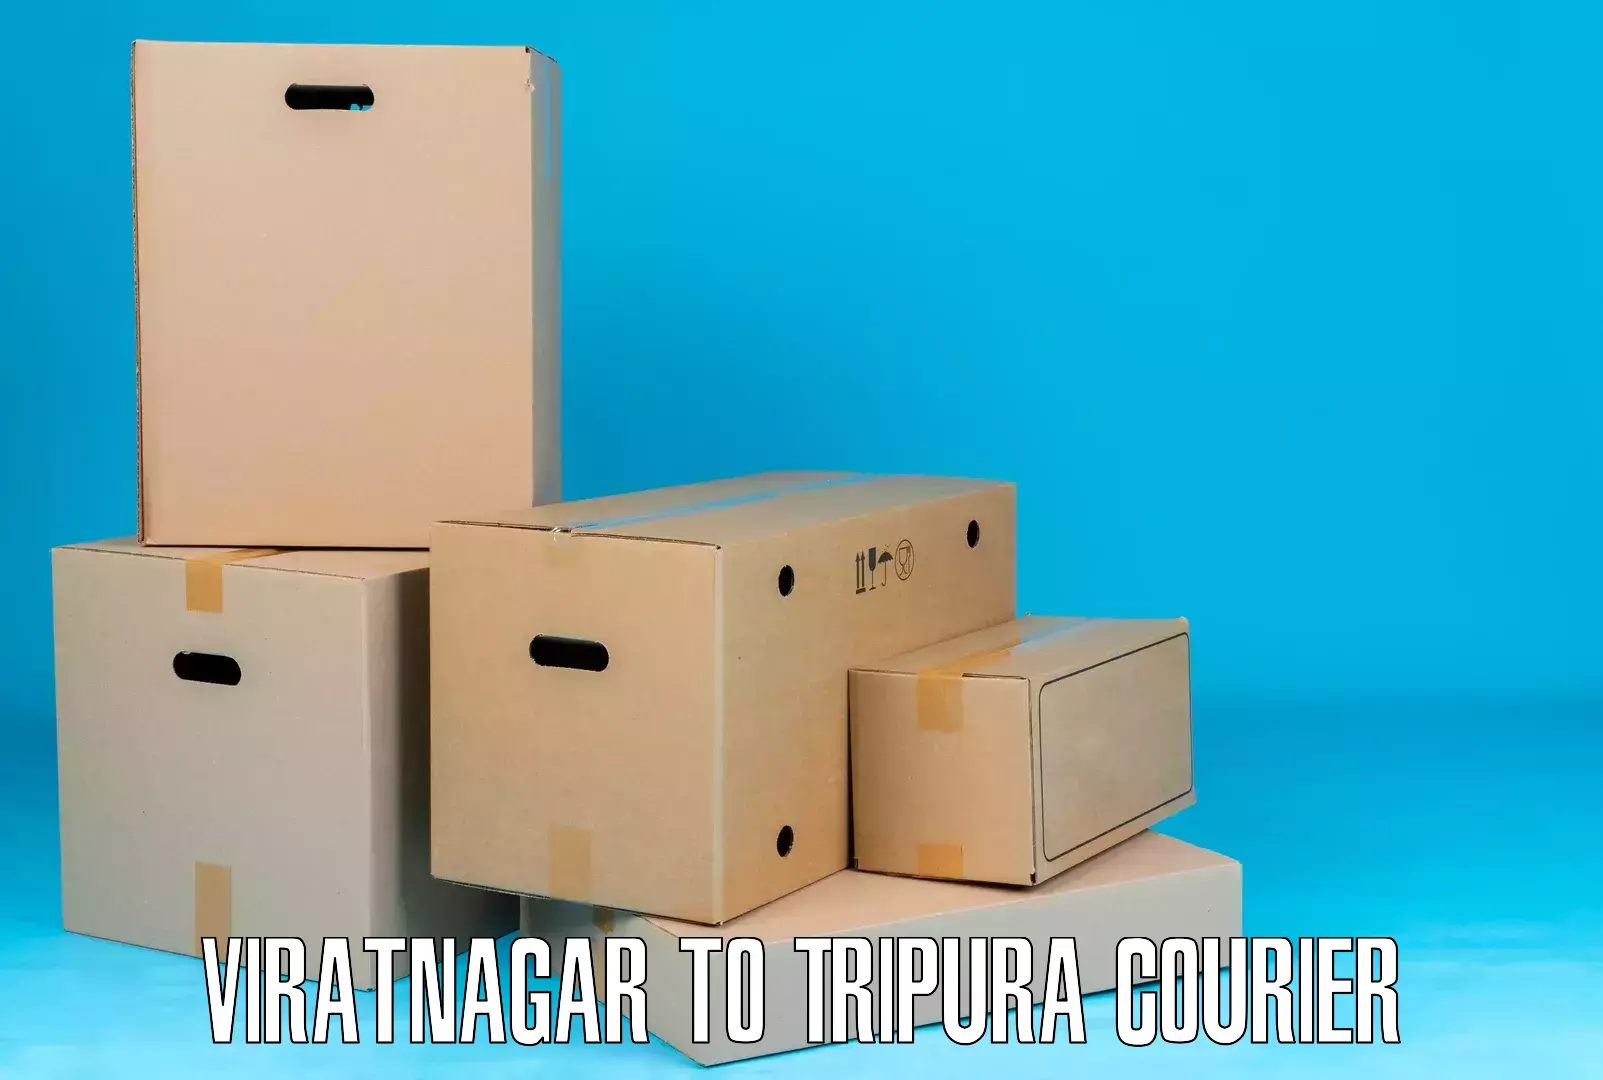 Affordable shipping solutions Viratnagar to Tripura